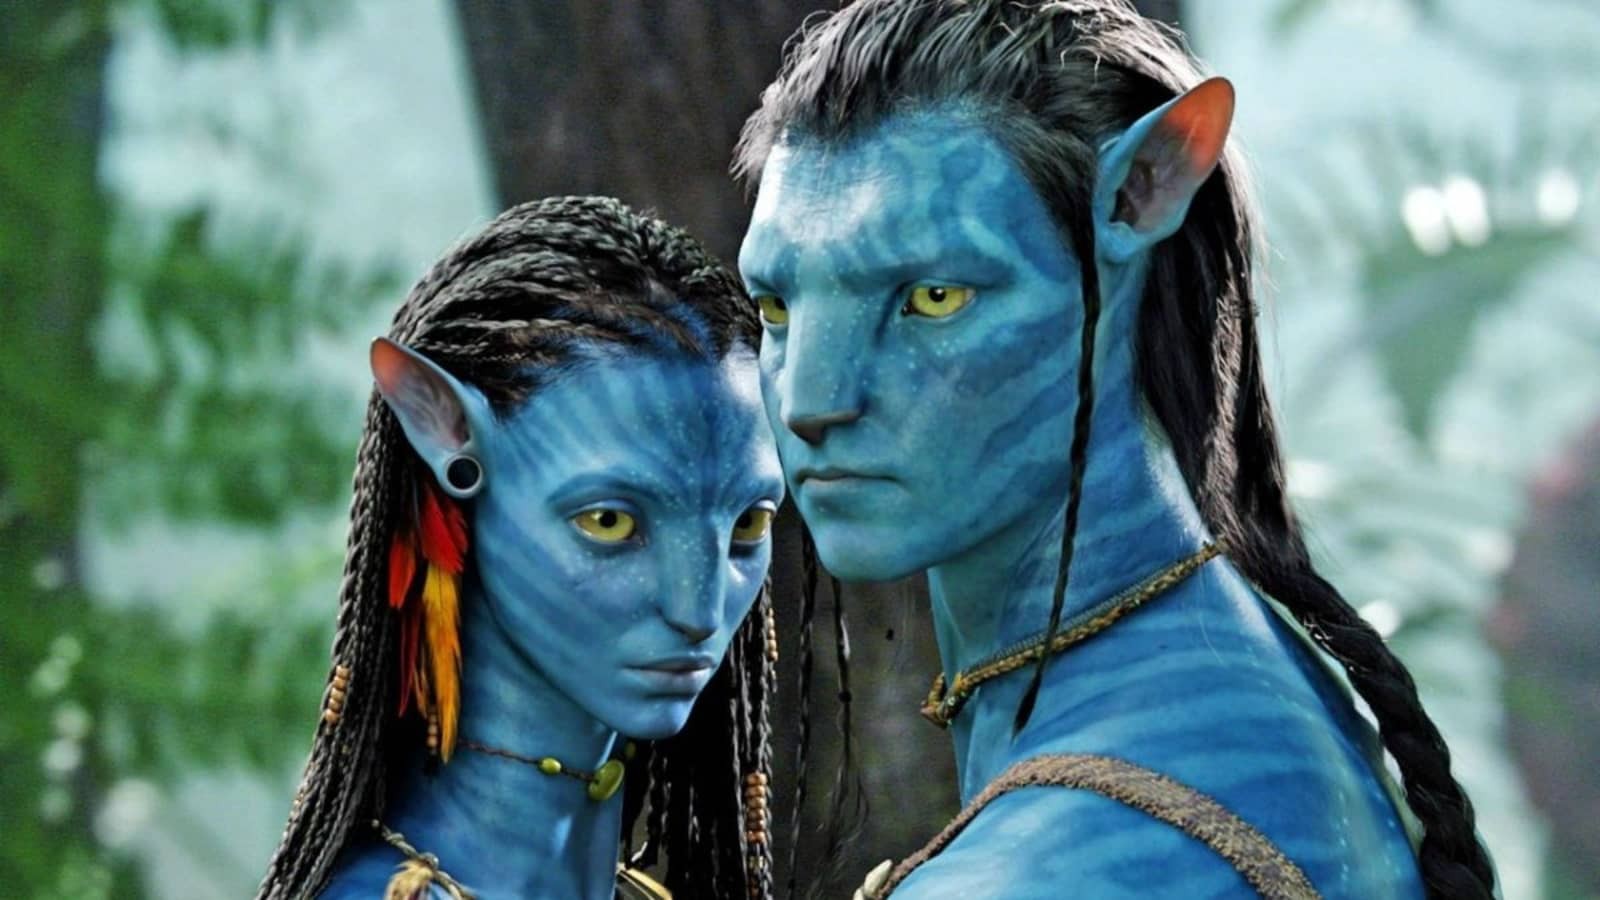 Avatar 3 & 4 Shooting (2024) đang được triển khai như một dự án đồng bộ, đảm bảo mang lại những bất ngờ và kì vĩ đến cho khán giả. Sự kết hợp hoàn hảo giữa lực lượng sản xuất và đạo diễn tài ba sẽ đưa chúng ta đến một thế giới mới, với những cảnh quay hấp dẫn và đầy chất lượng.